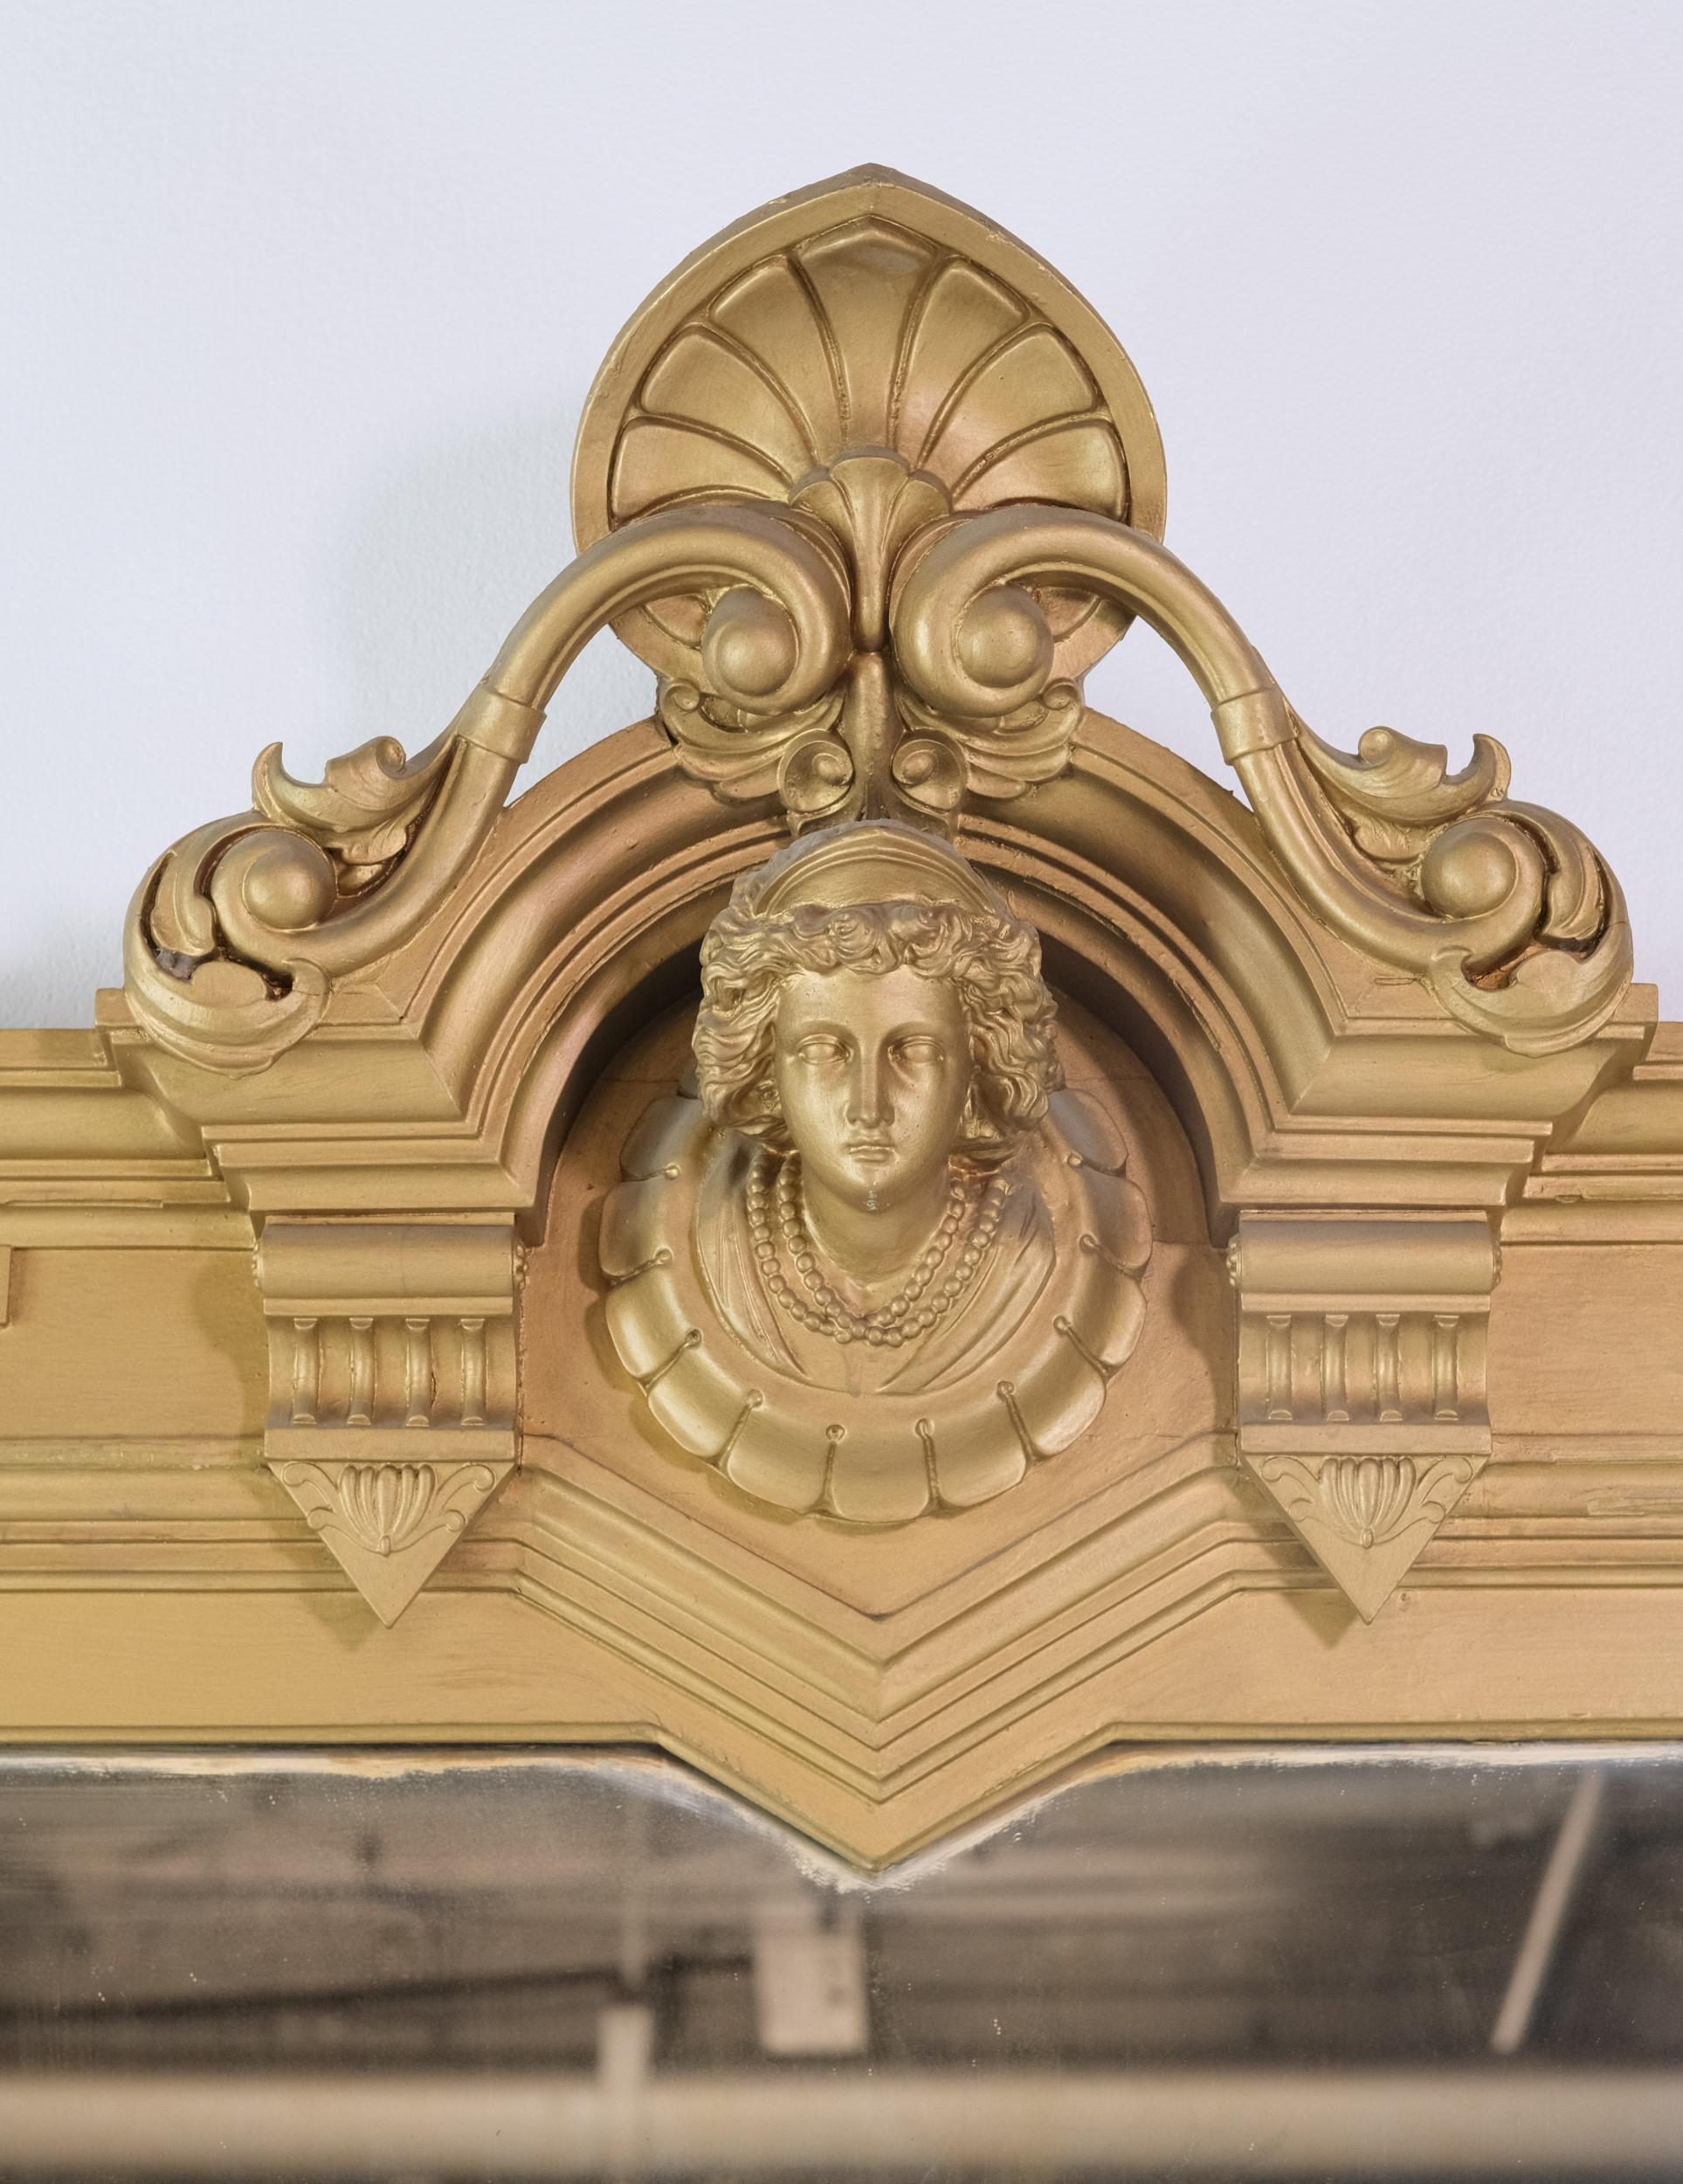 Viktorianischer vergoldeter Kaminsims-Spiegel mit exquisit geschnitzten figuralen und floralen Details.  Einige der Details sind in Gesso geschnitzt.  Diese atemberaubende über Kaminsims mit komplizierten Details hat eine sehr große Größe. Bitte